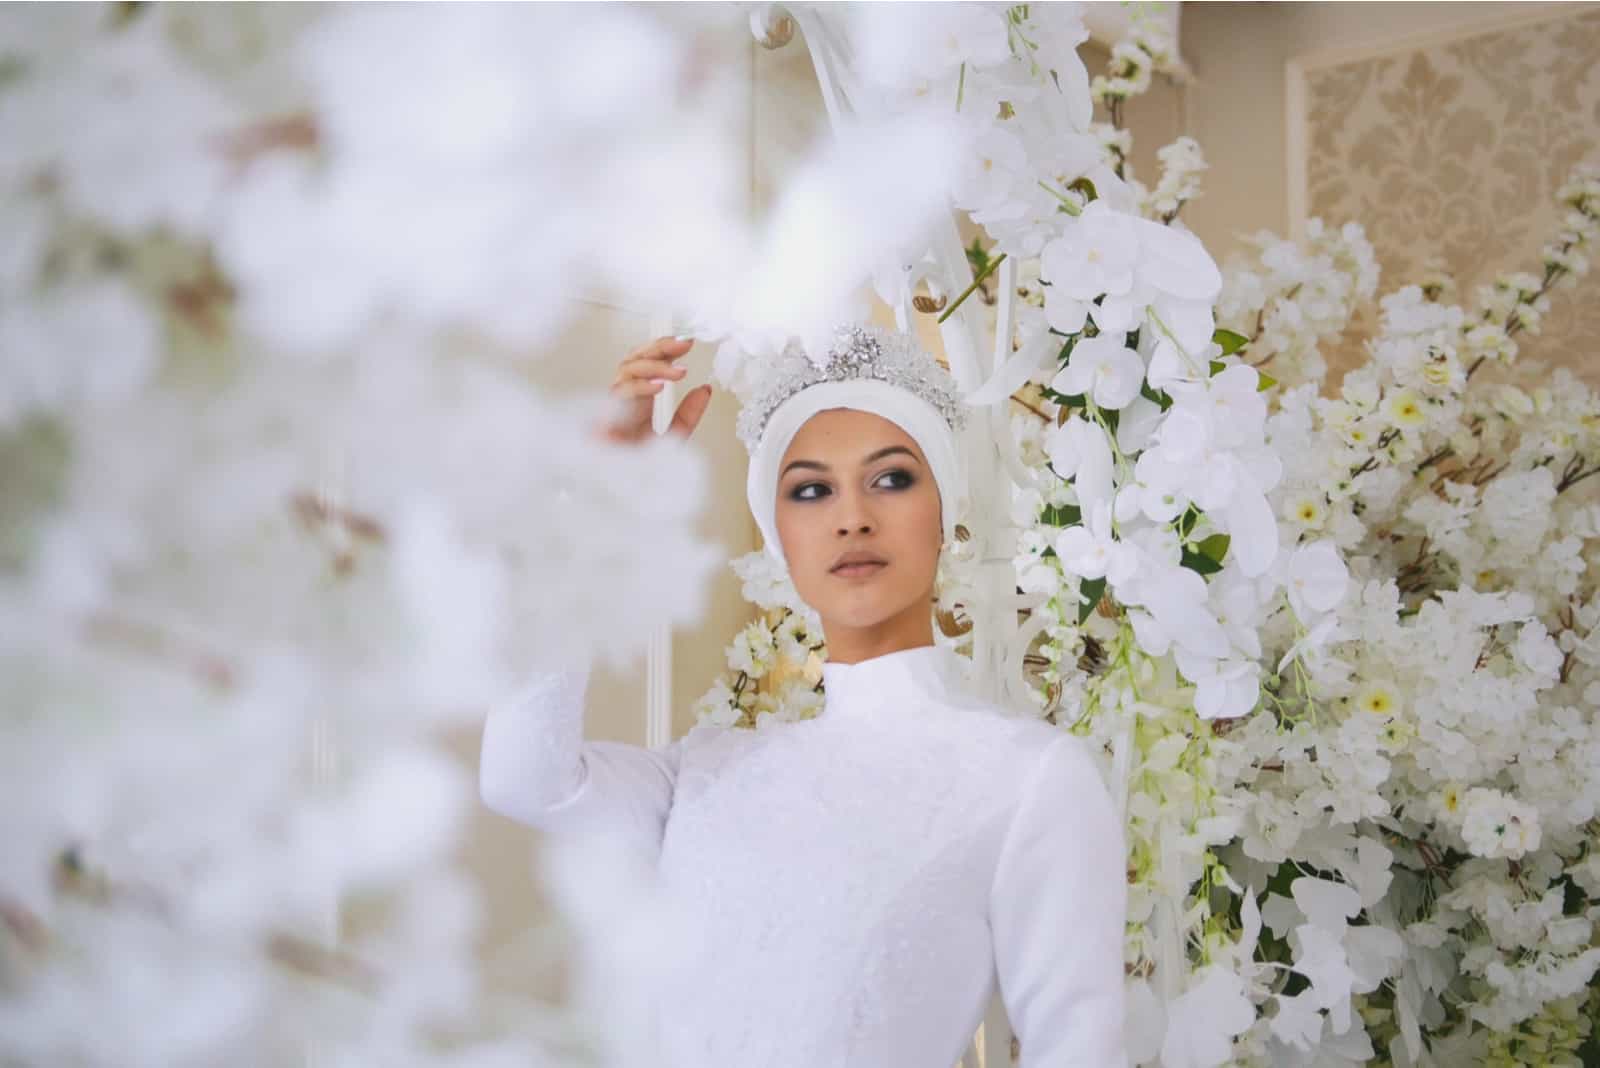 Braut mit Tiara im Hochzeitskleid in weißen Blumen